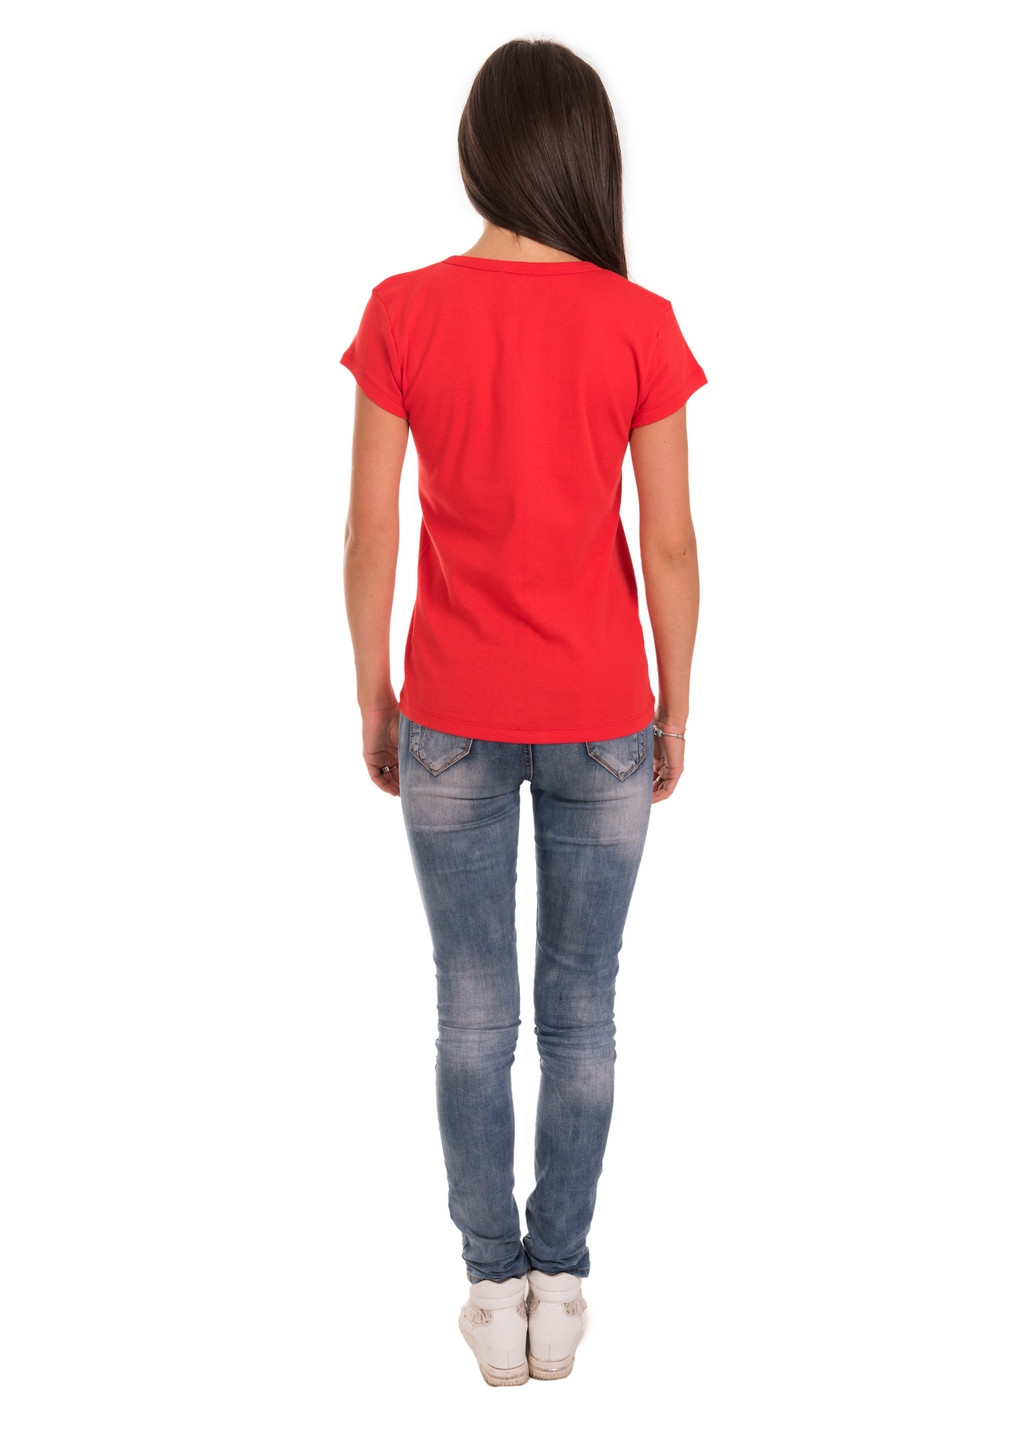 Червона всесезон футболка жіноча Наталюкс 21-2383